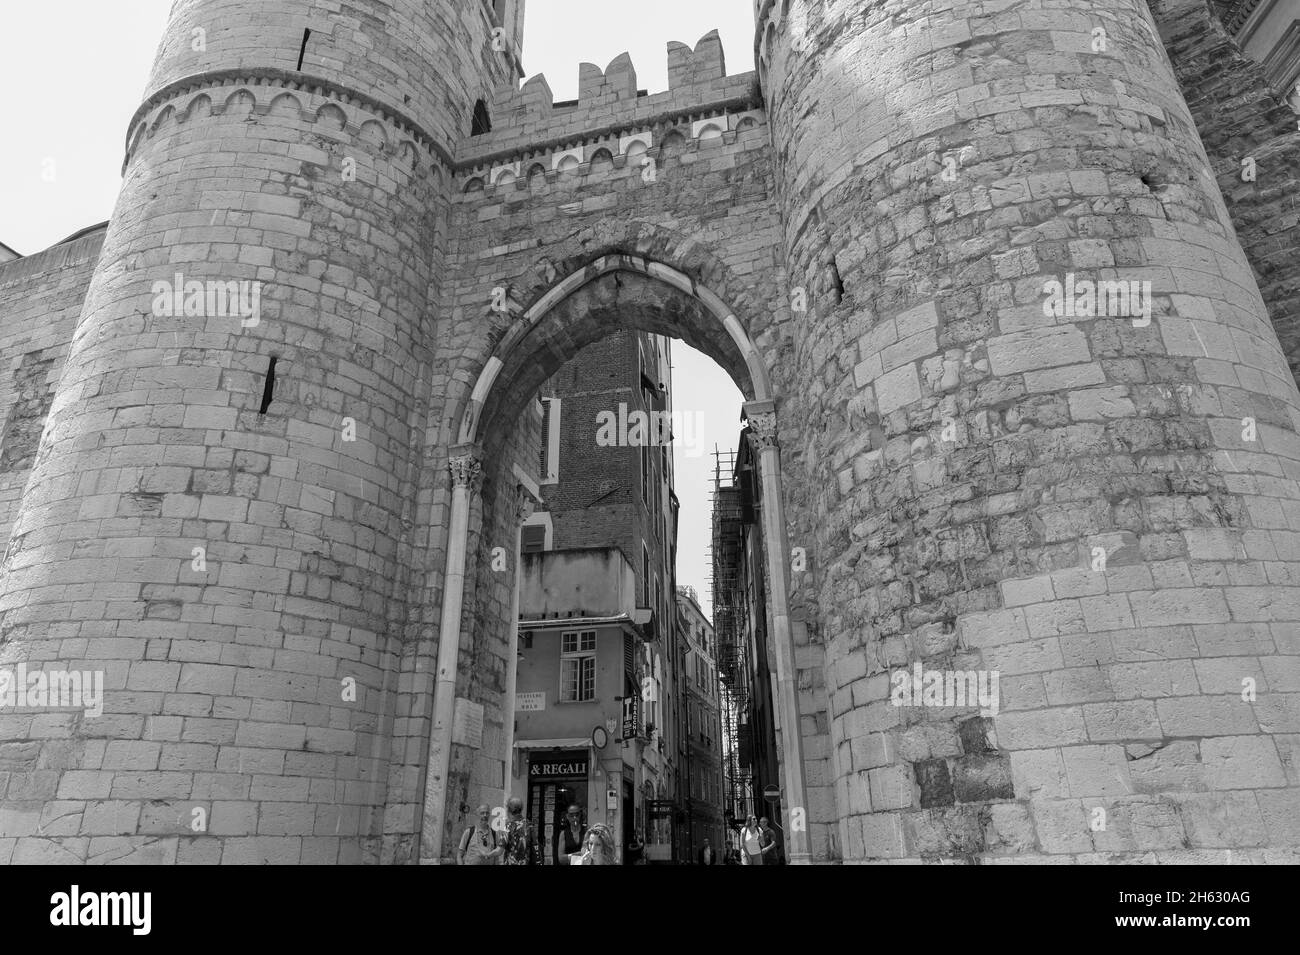 porta soprana, porte médiévale de deux tours de la vieille ville de gênes, italie Banque D'Images